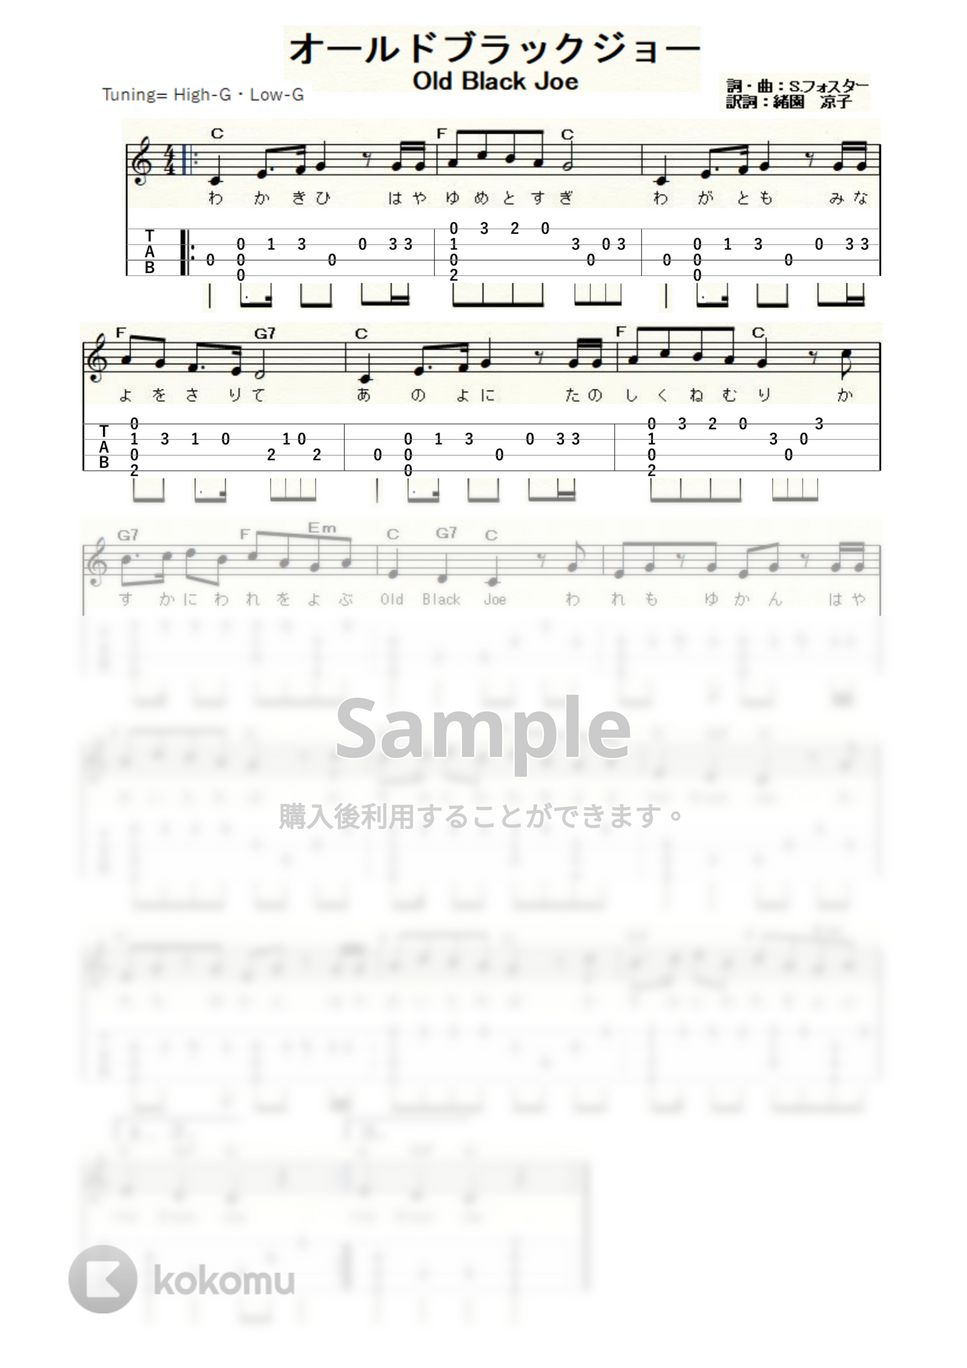 オールドブラックジョー (ｳｸﾚﾚｿﾛ / High-G・Low-G / 初級～中級) by ukulelepapa